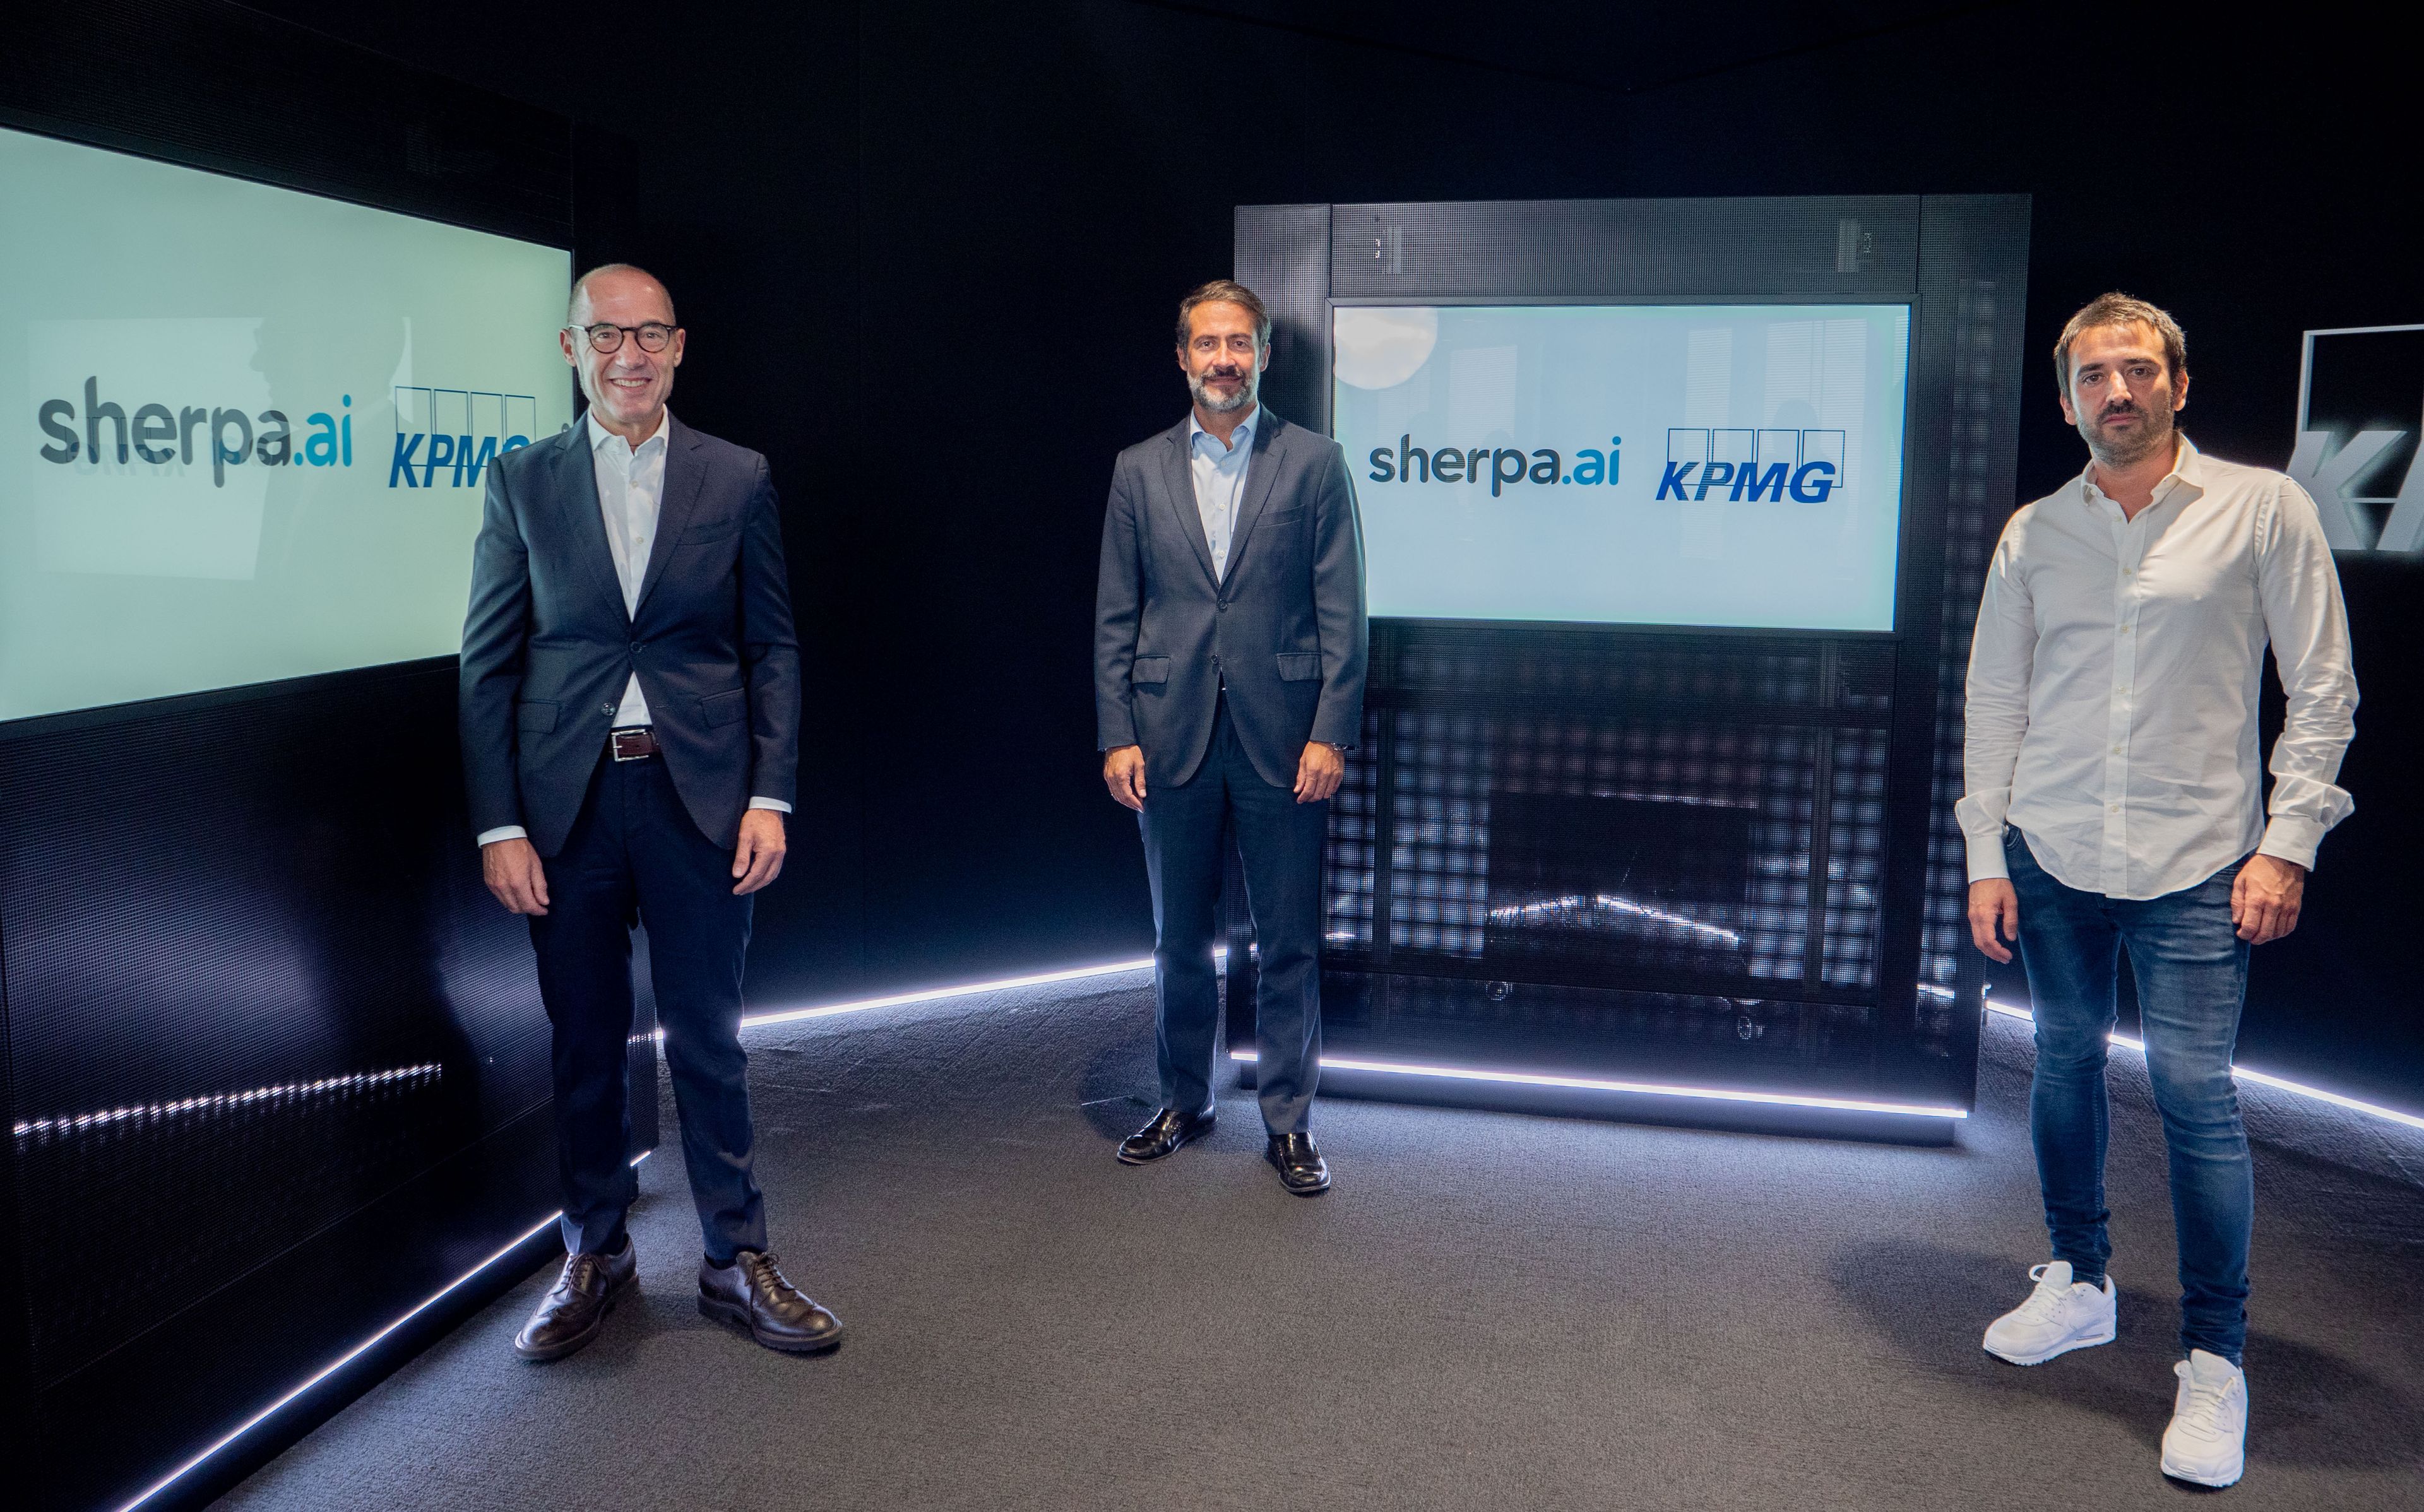 De izquierda a derecha: Luis Buzzi, socio responsable de KPMG Innovate en España, Juan José Cano, presidente de KPMG en España, y Xabi Uribe-Etxebarria, fundador y CEO de Sherpa.ai.